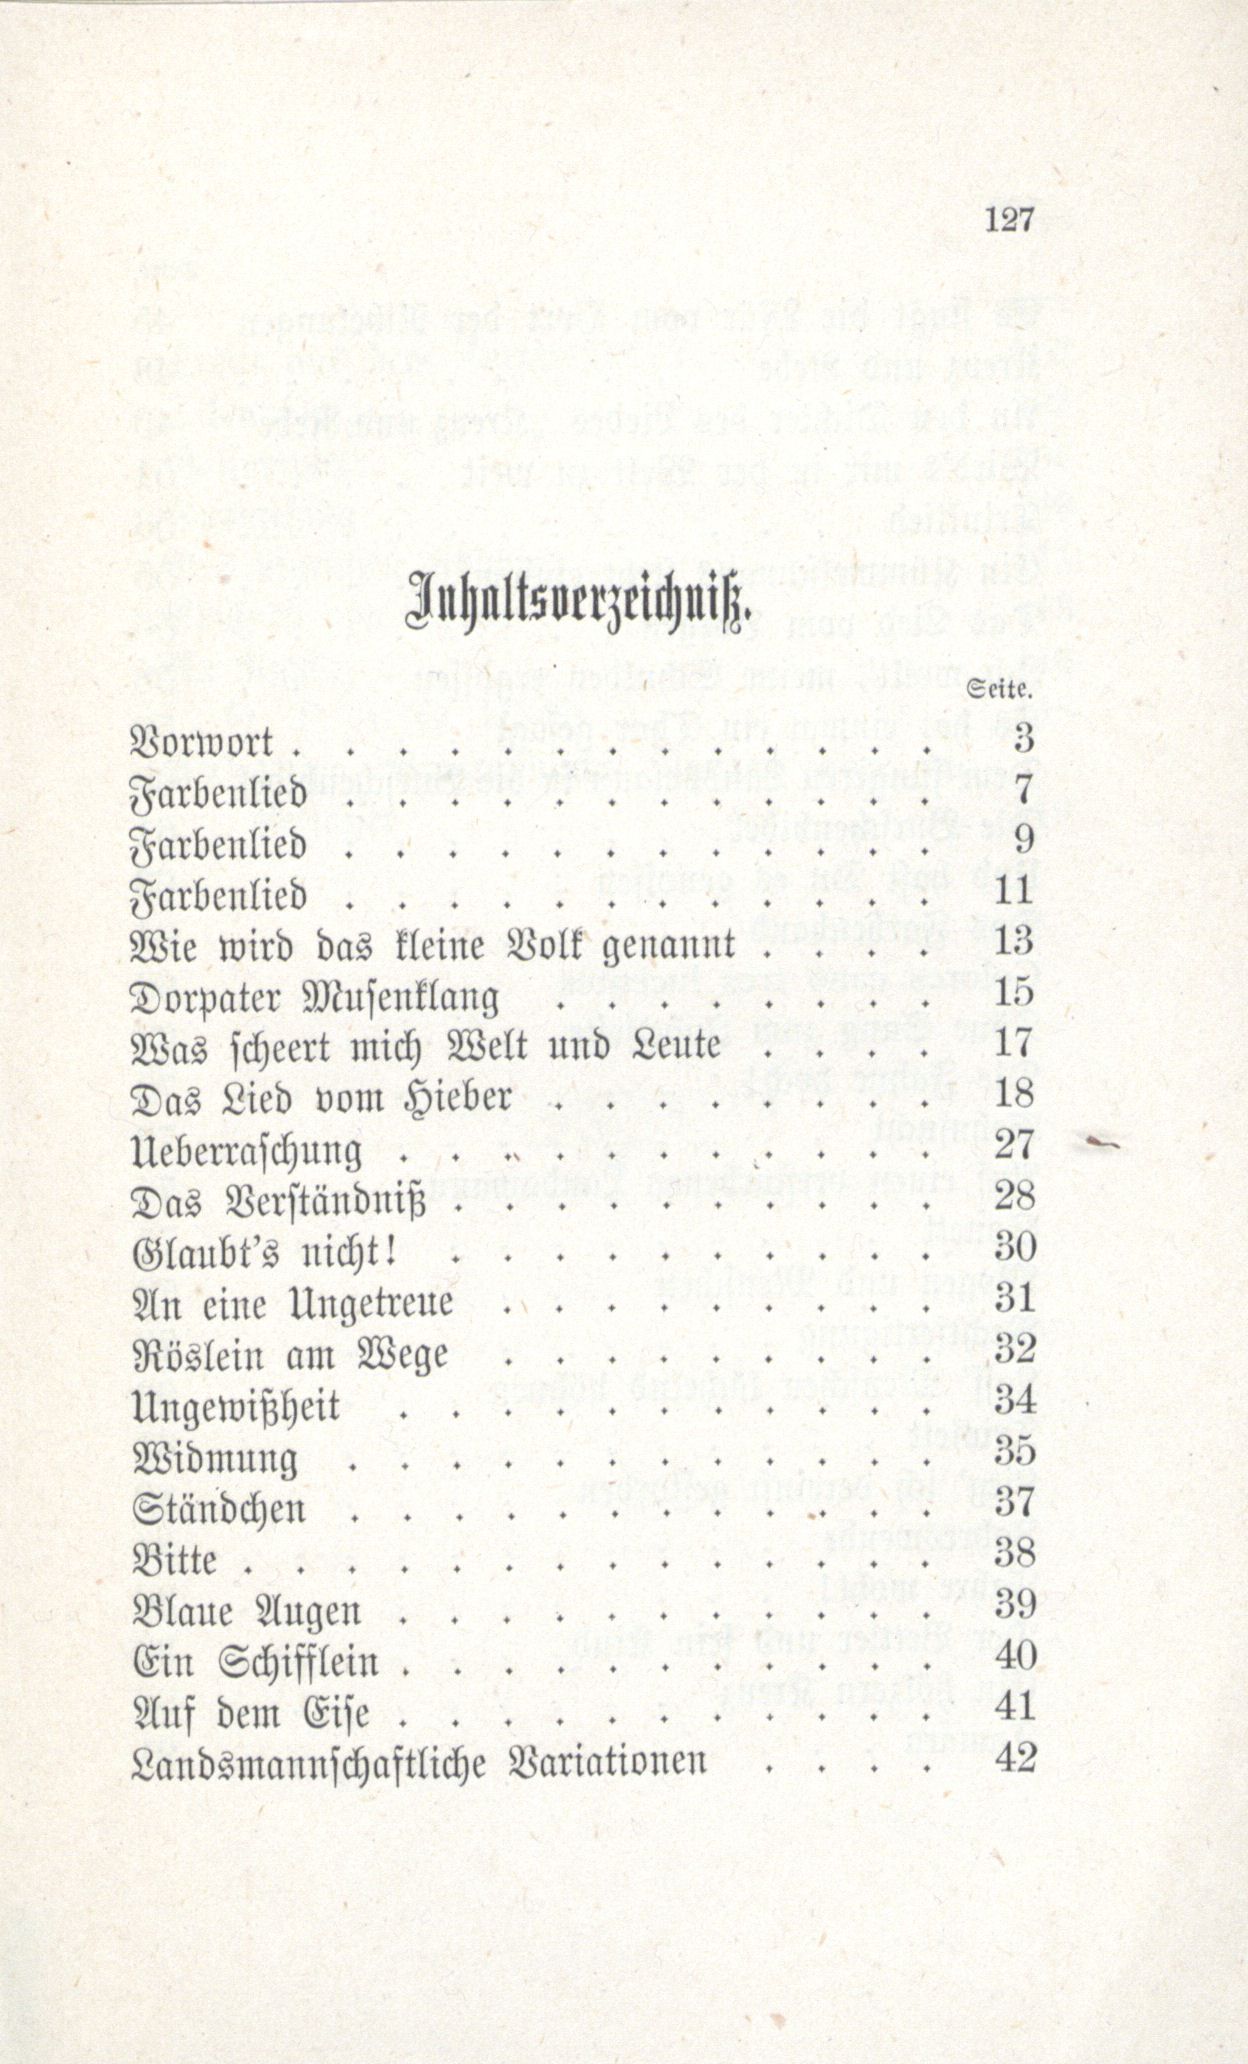 Erinnerung an die Fraternitas (1880) | 127. (127) Inhaltsverzeichnis